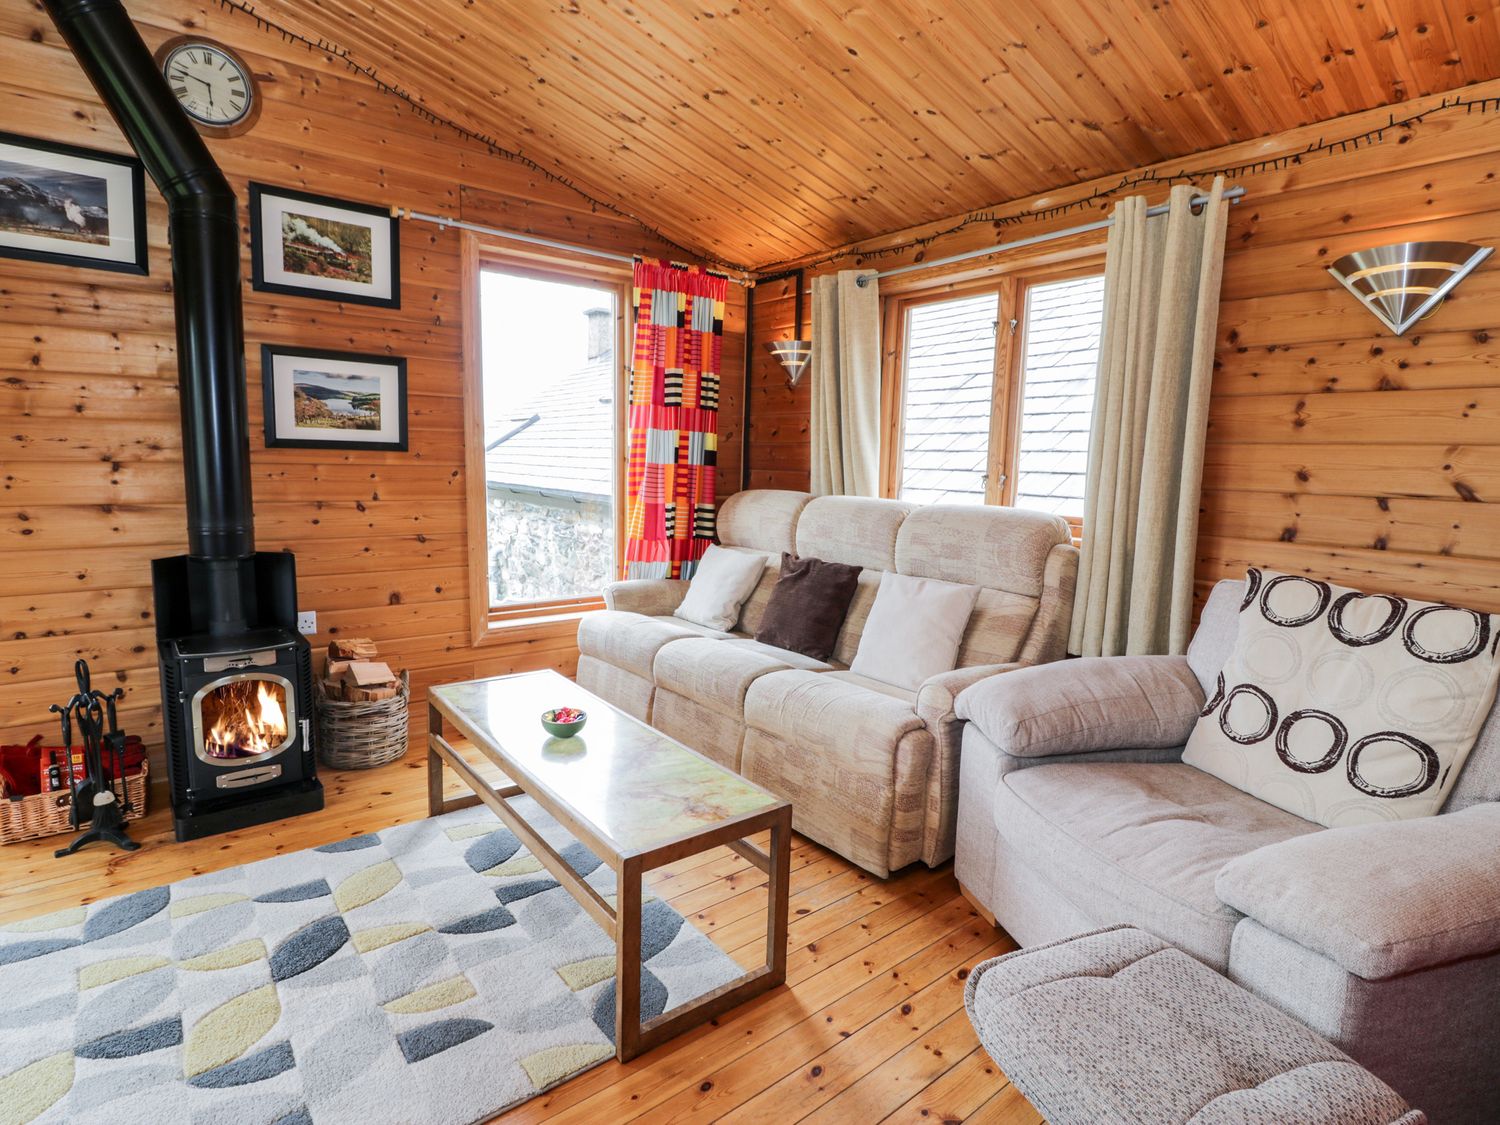 Snowdon Vista Cabin, North Wales